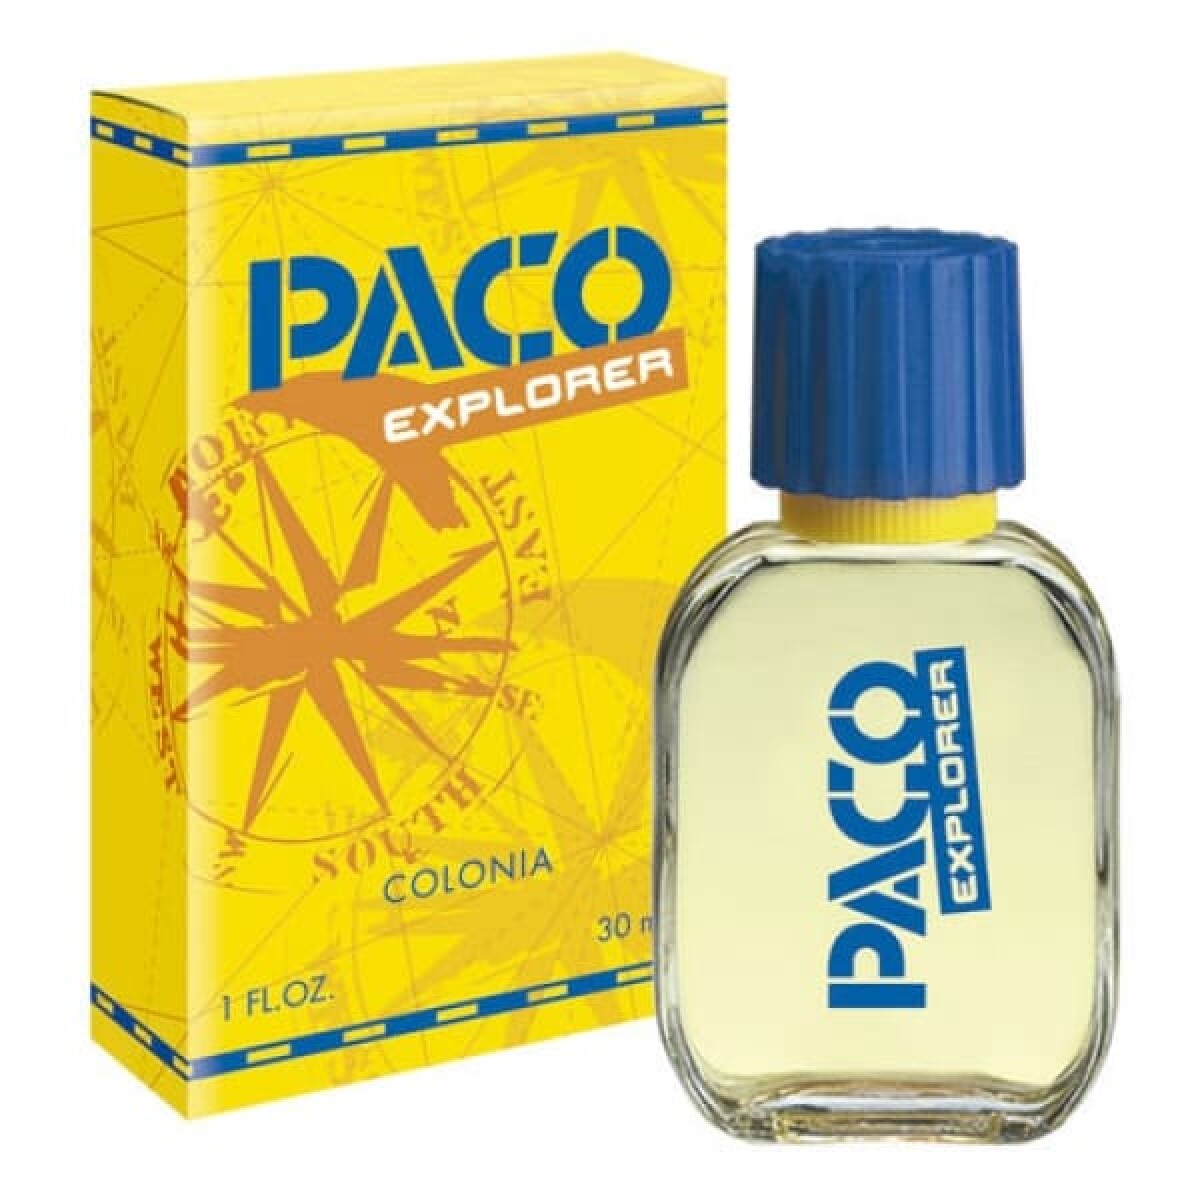 Perfume Paco Explorer Colonia 30Ml X 30 Ml 